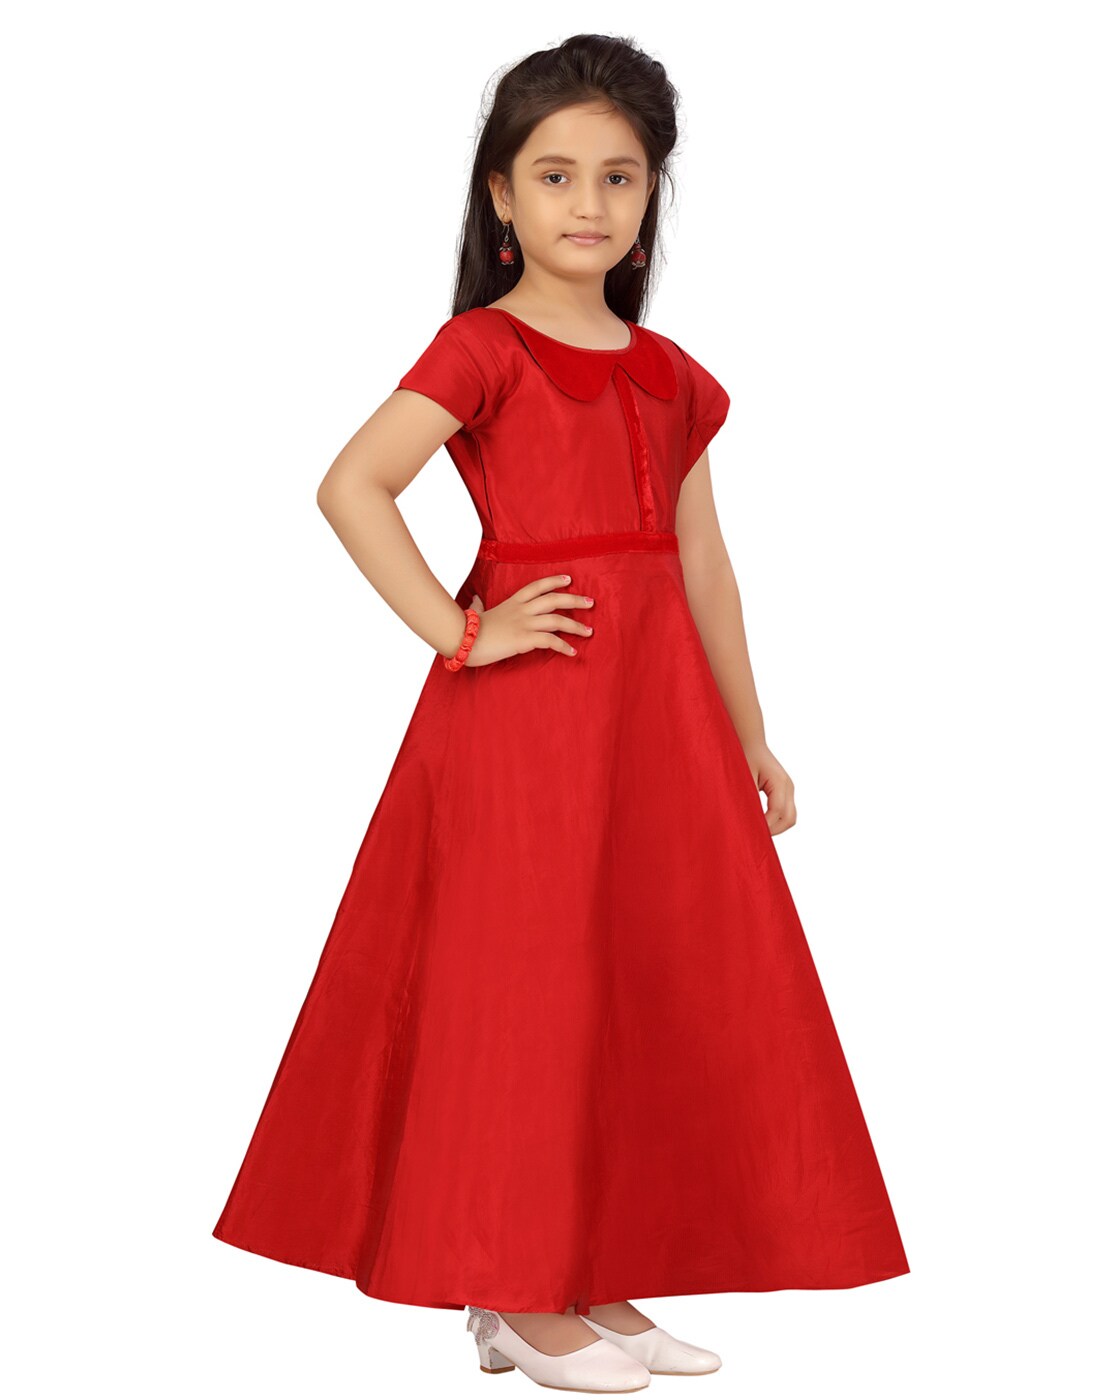 Honey Couture CHRISTINA Red Off Shoulder Glitter Shimmer Formal Dress